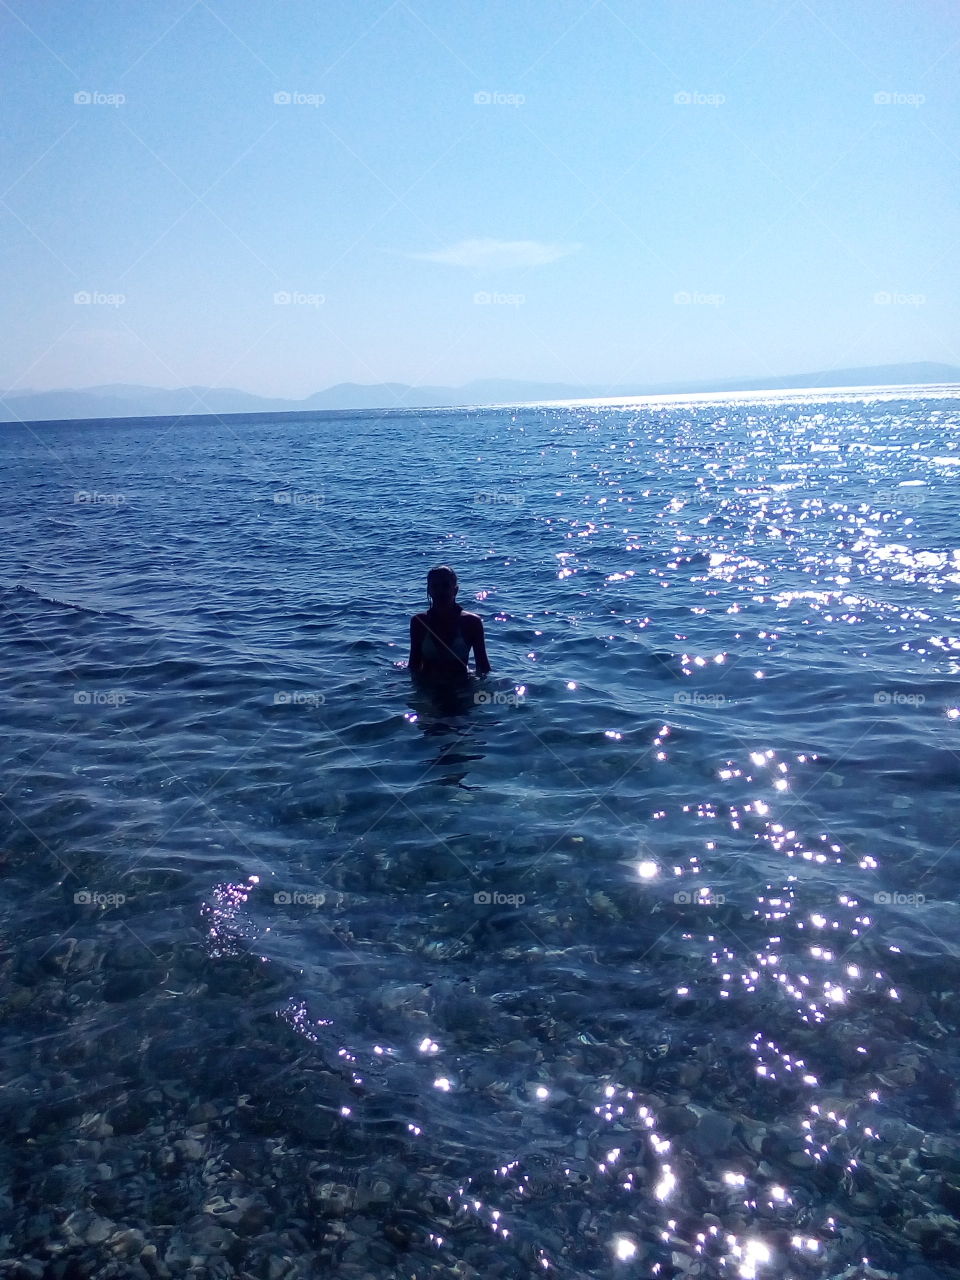 In the Sea